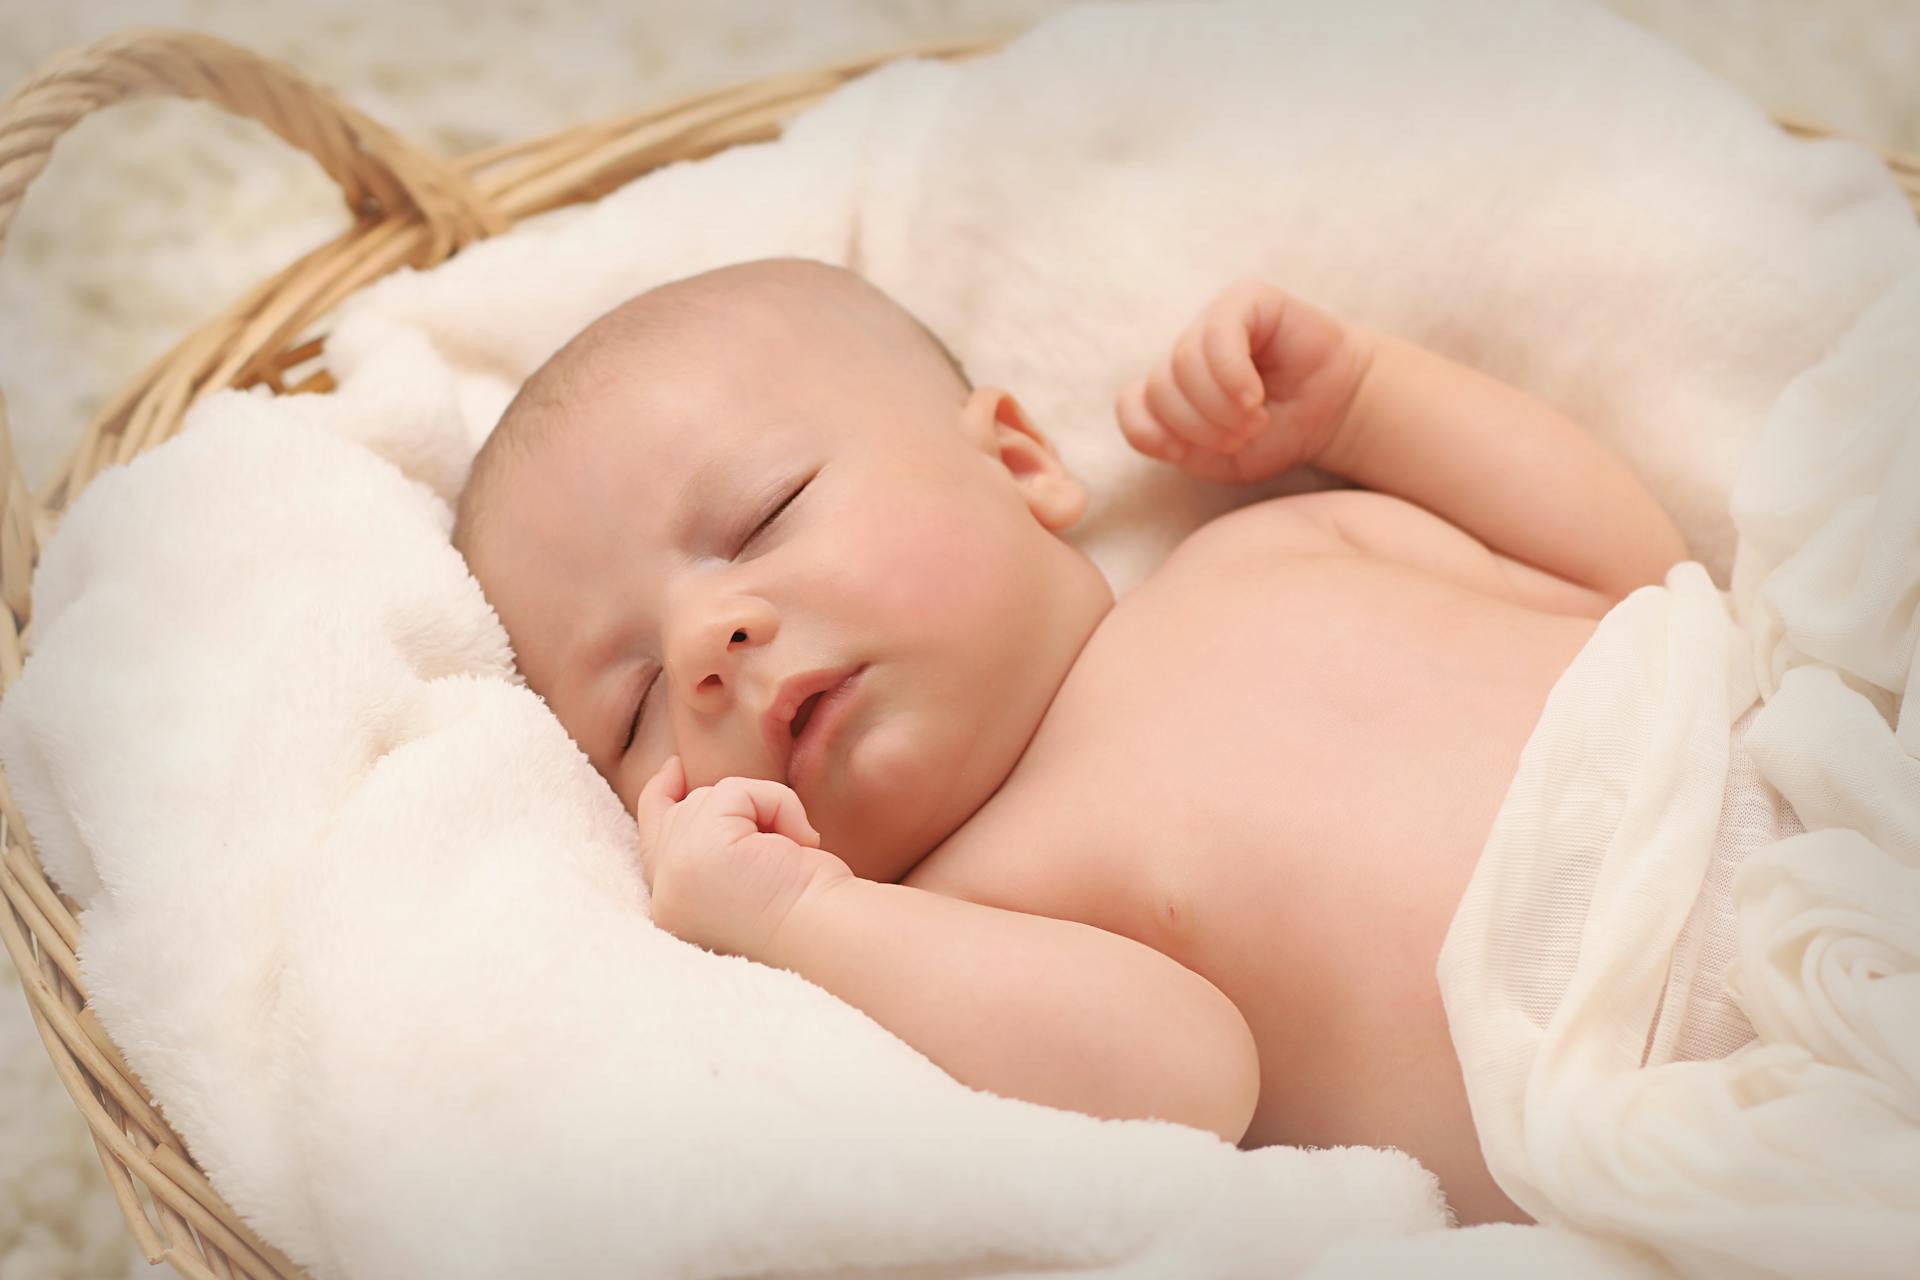 Baby sleeping in a basket | Source: Pexels